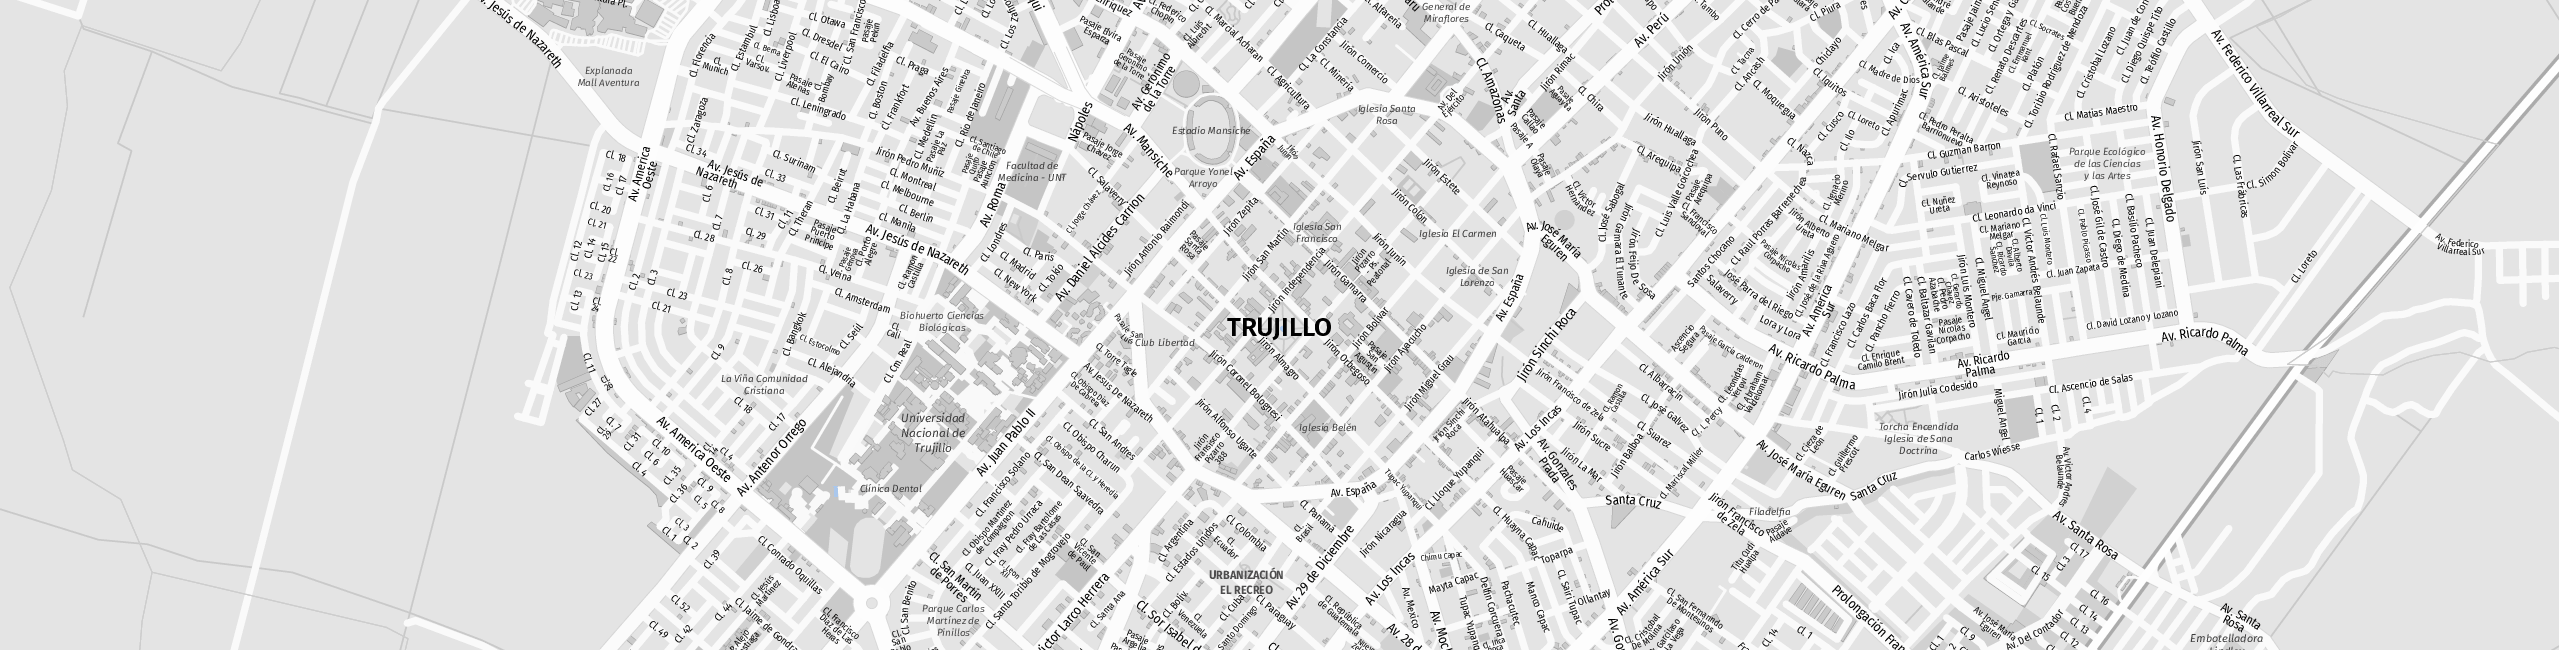 Stadtplan Trujillo zum Downloaden.